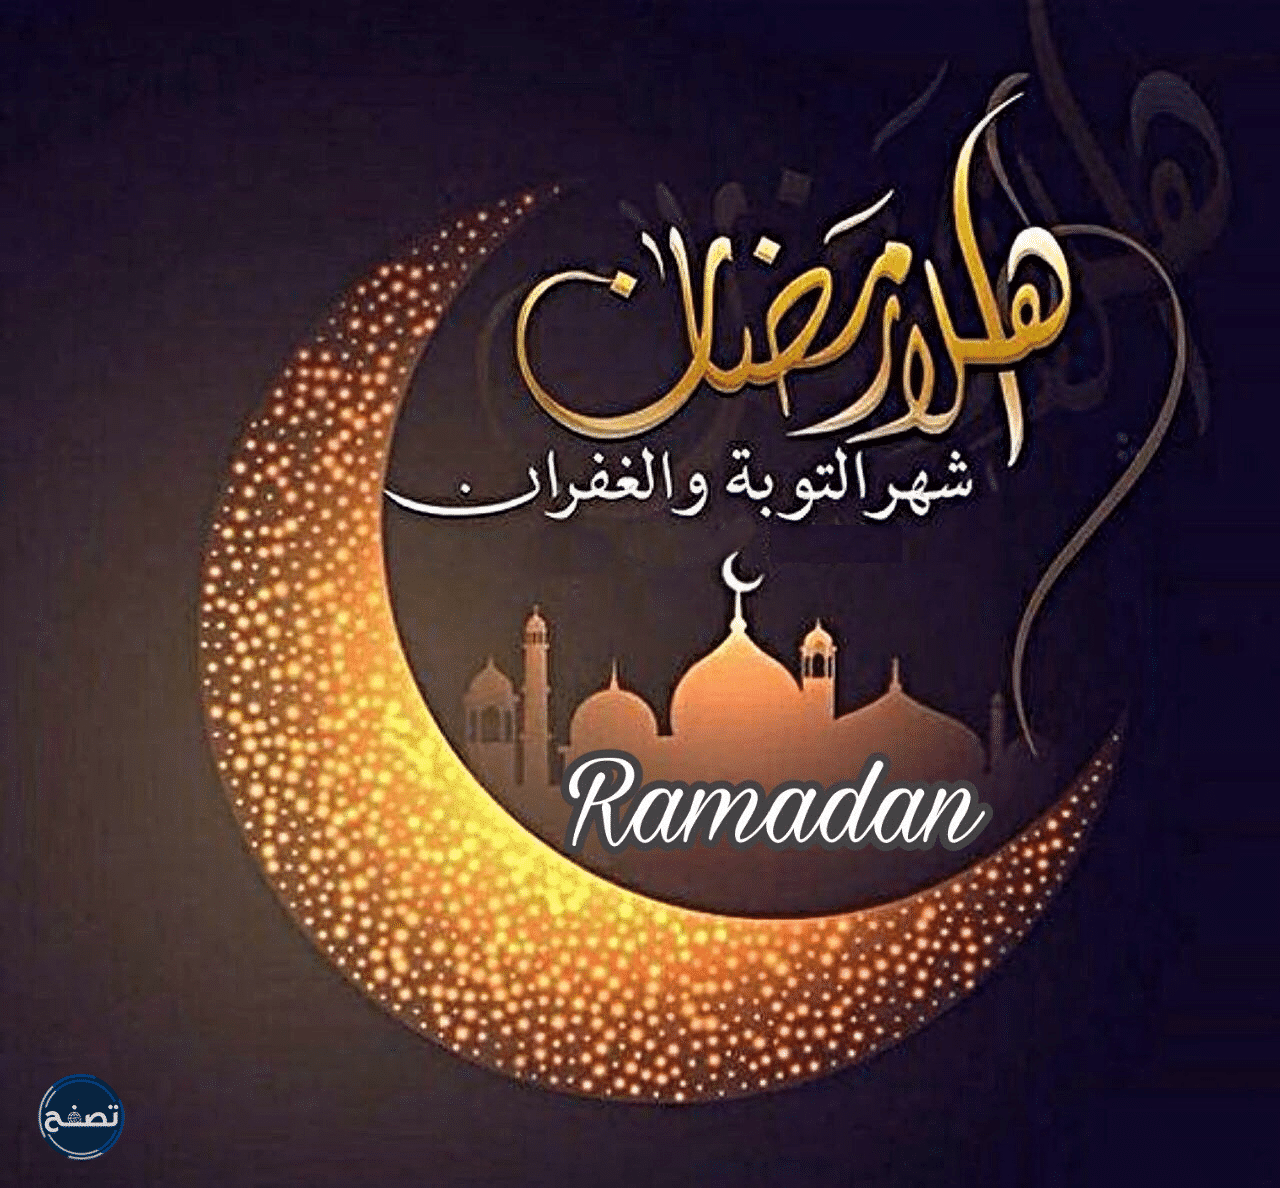 صور عبارات واتس اب عن شهر رمضان